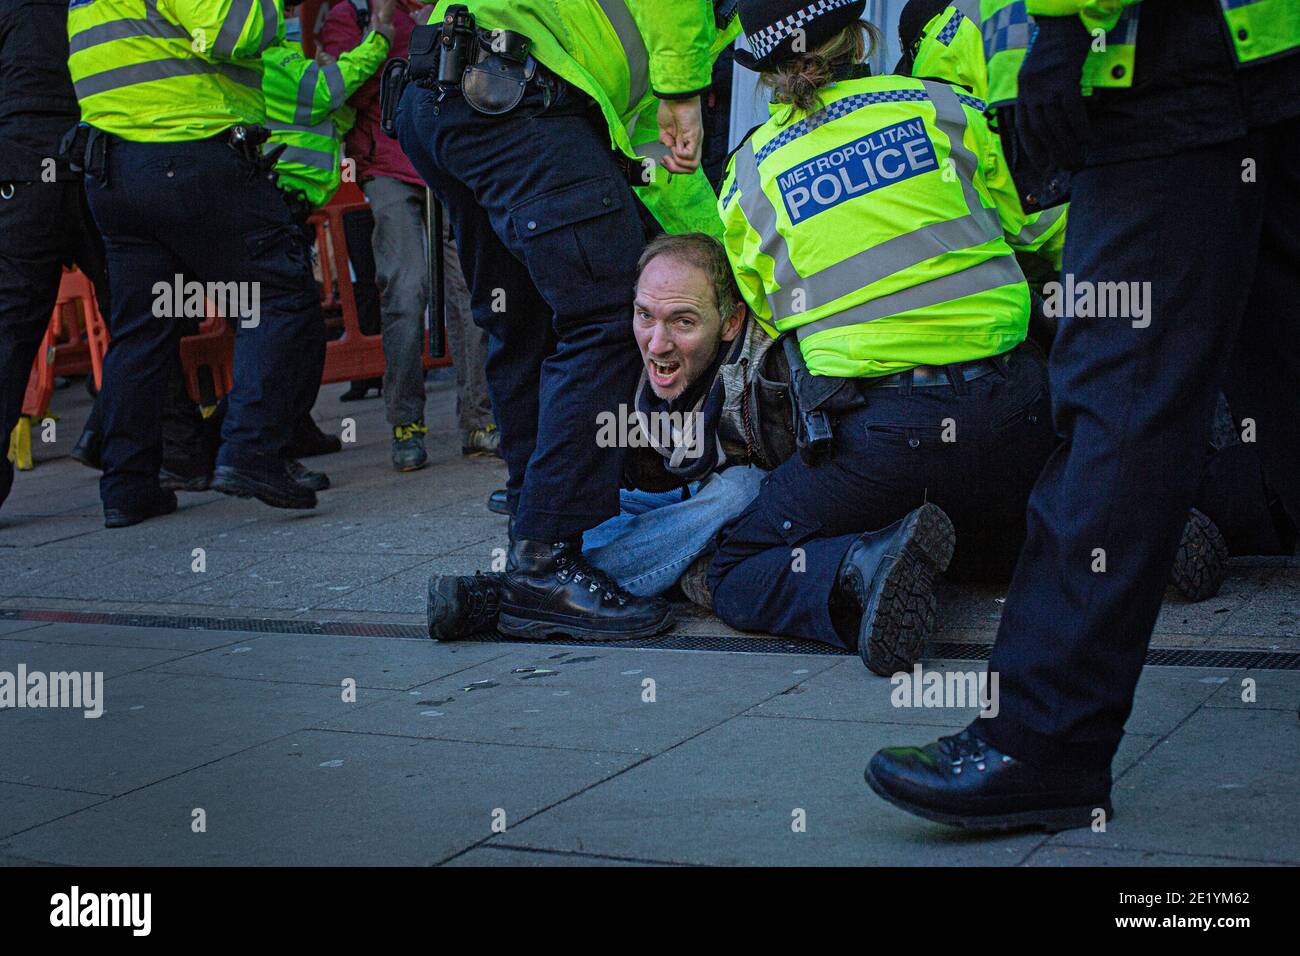 Un manifestant est arrêté par la police sur Clapham High Street lors de la manifestation anti-verrouillage le 9 janvier 2021 à Londres, en Angleterre Banque D'Images